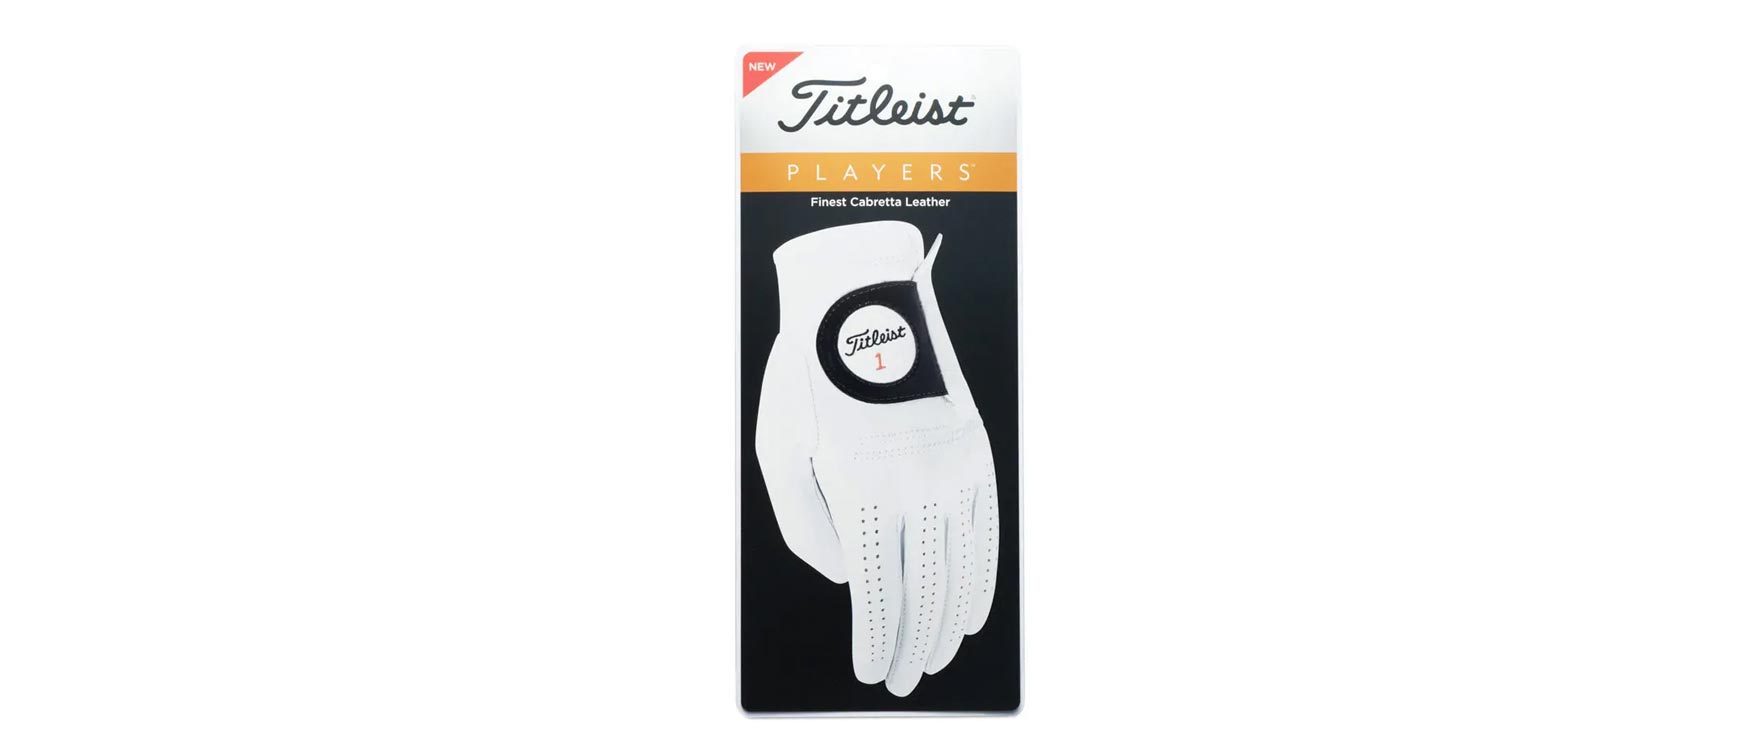 5. Titleist Players Golf Glove